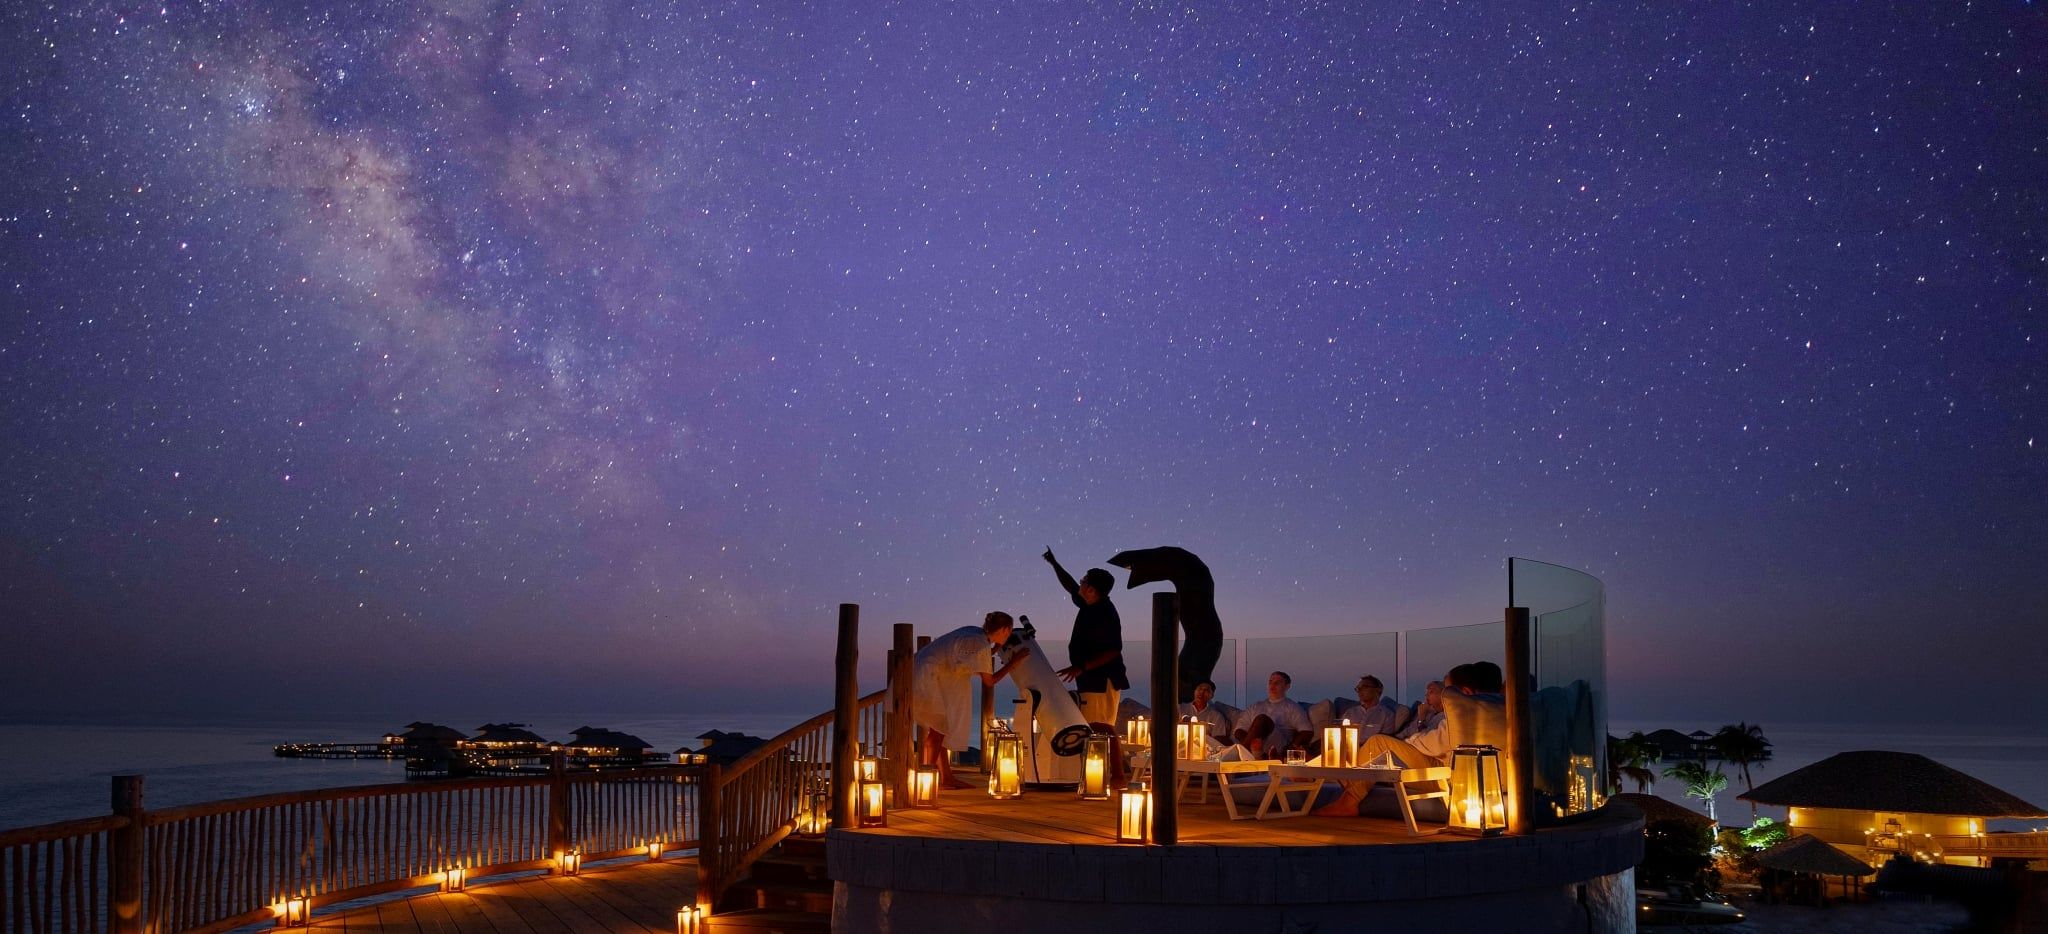 Eine Sternenbeobachtung in der Sternwarte des Hotels Soneva Secret auf den Malediven